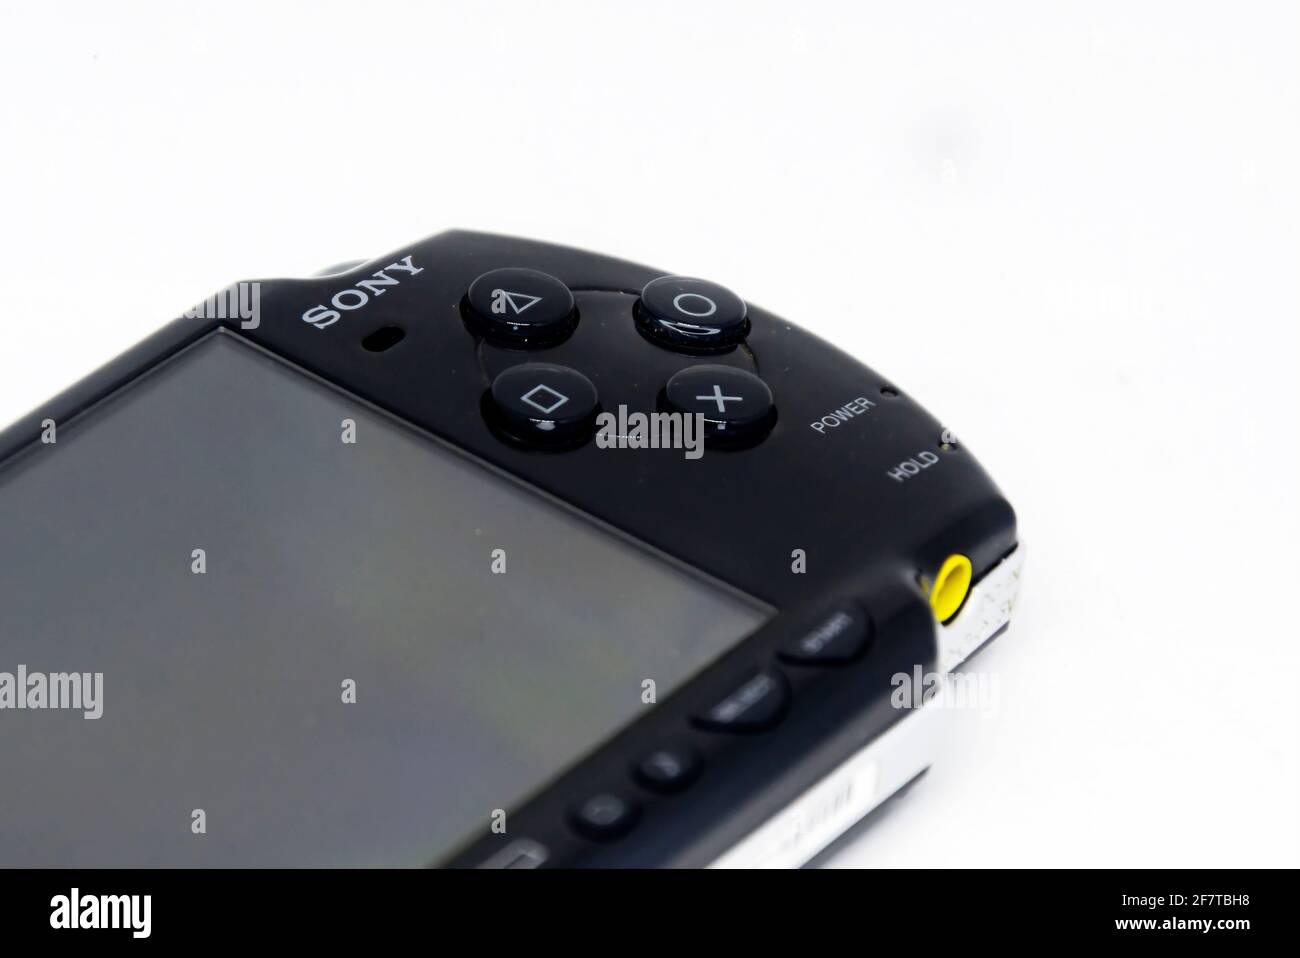 Game console psp immagini e fotografie stock ad alta risoluzione - Alamy